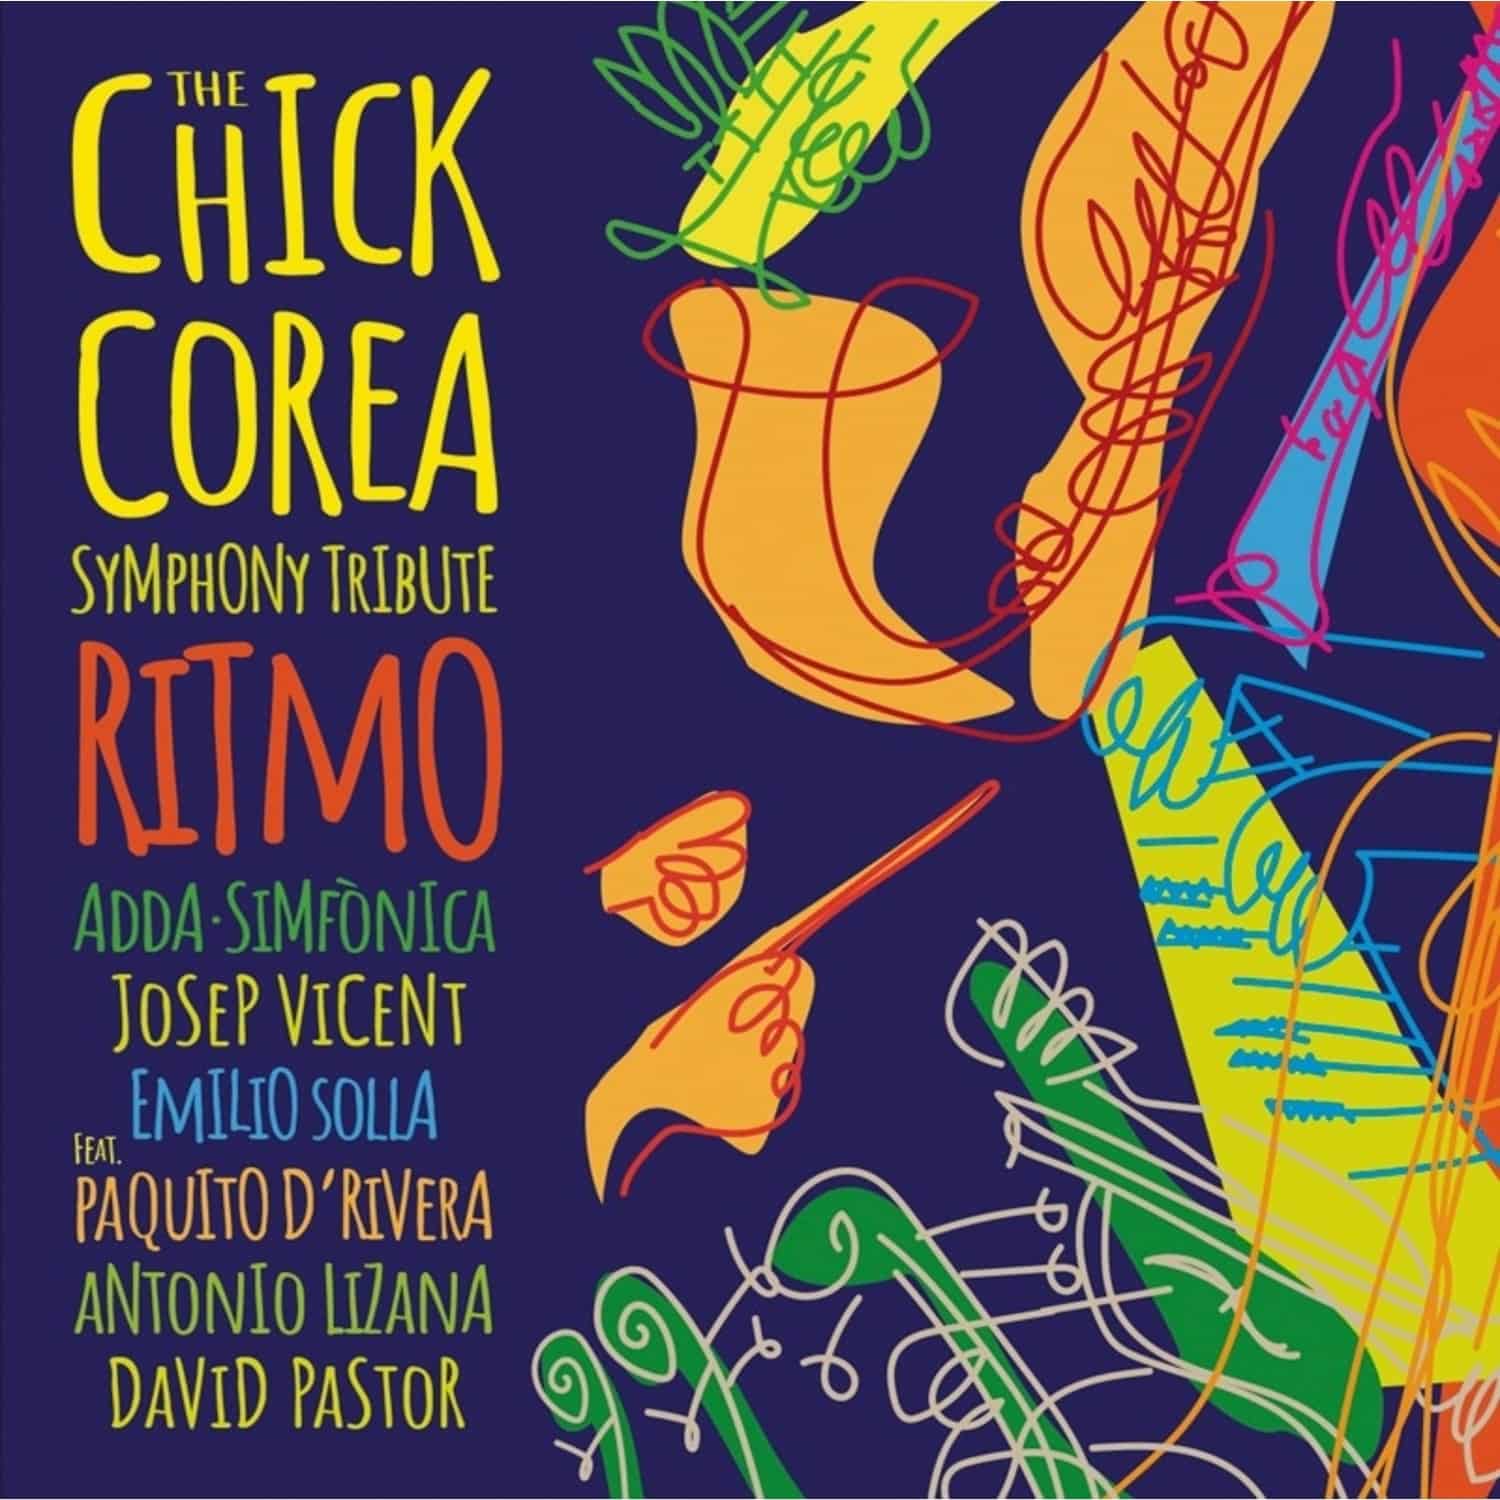 ADDA Simfonica / Josep Vicent / Emillio Solla - THE CHICK COREA SYMPHONY TRIBUTE.RITMO 